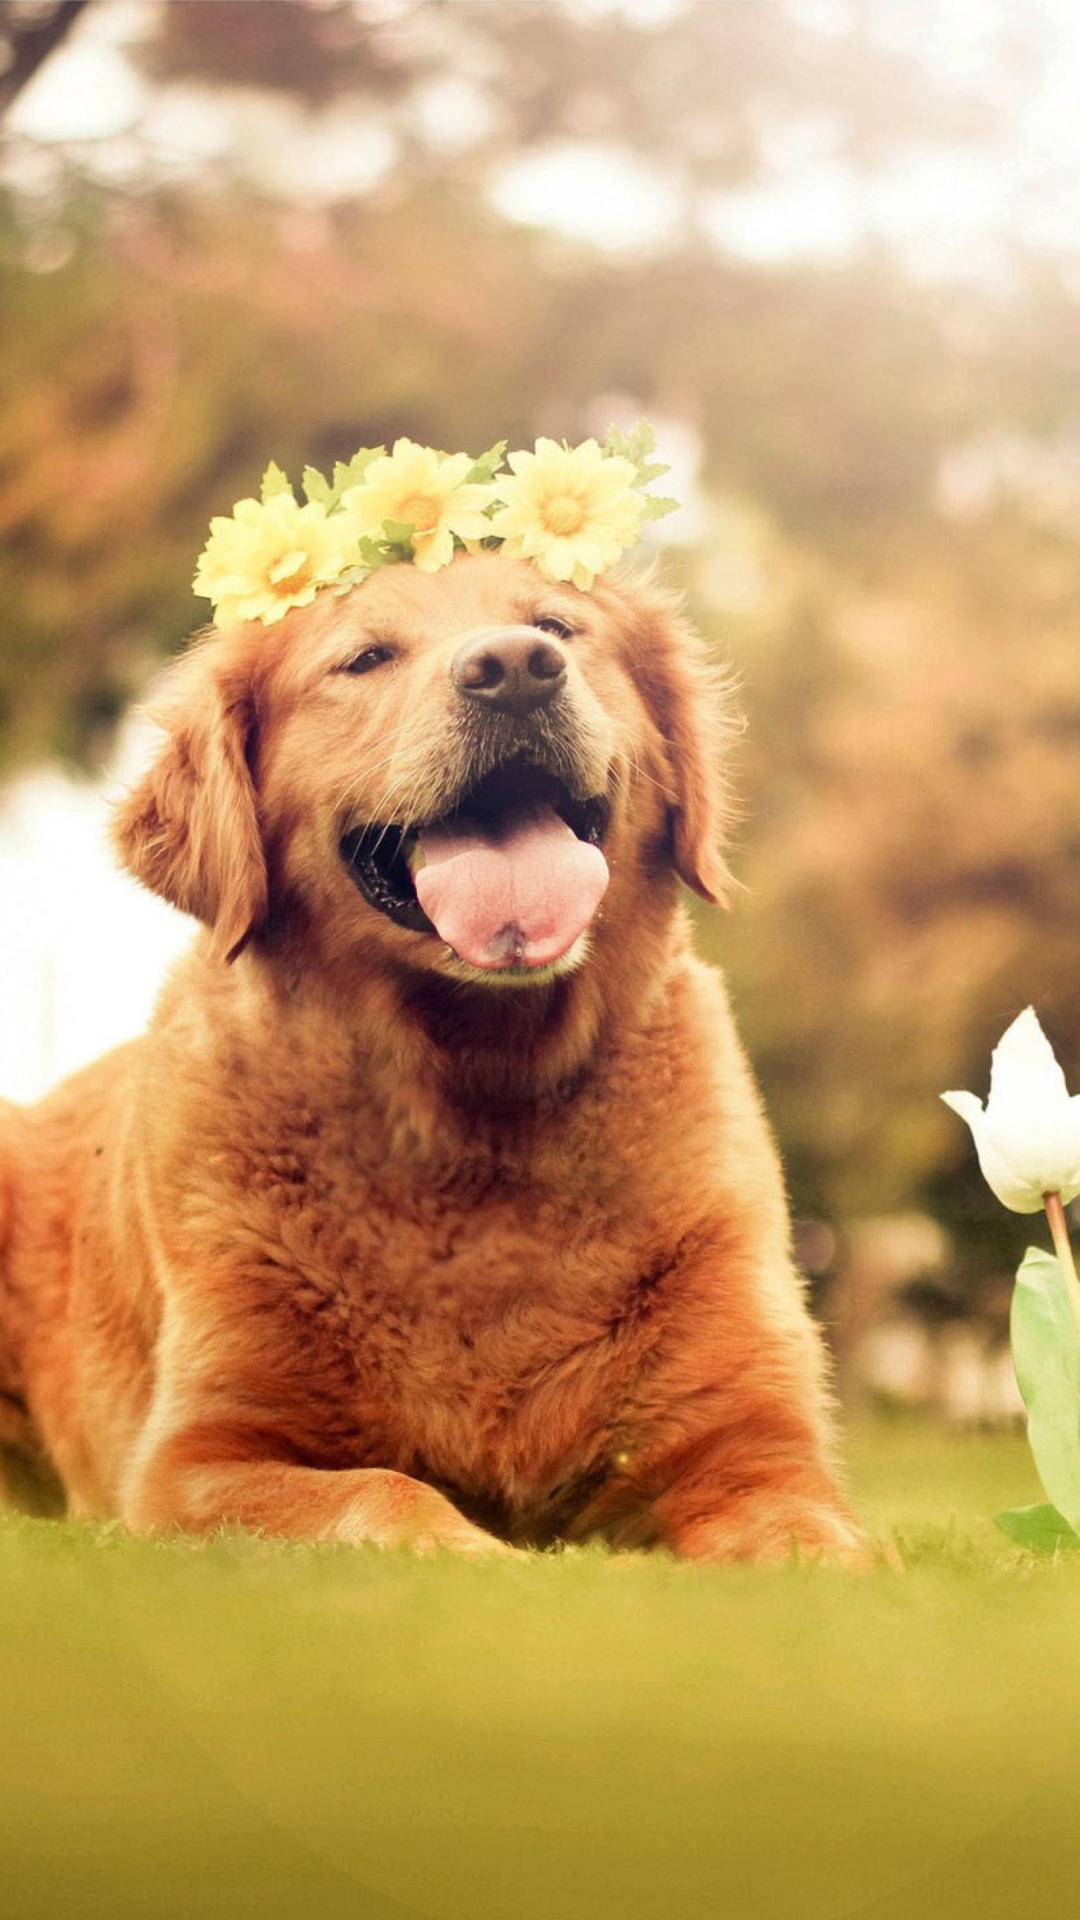 Обои Ginger Dog With Flower Wreath 1080x1920